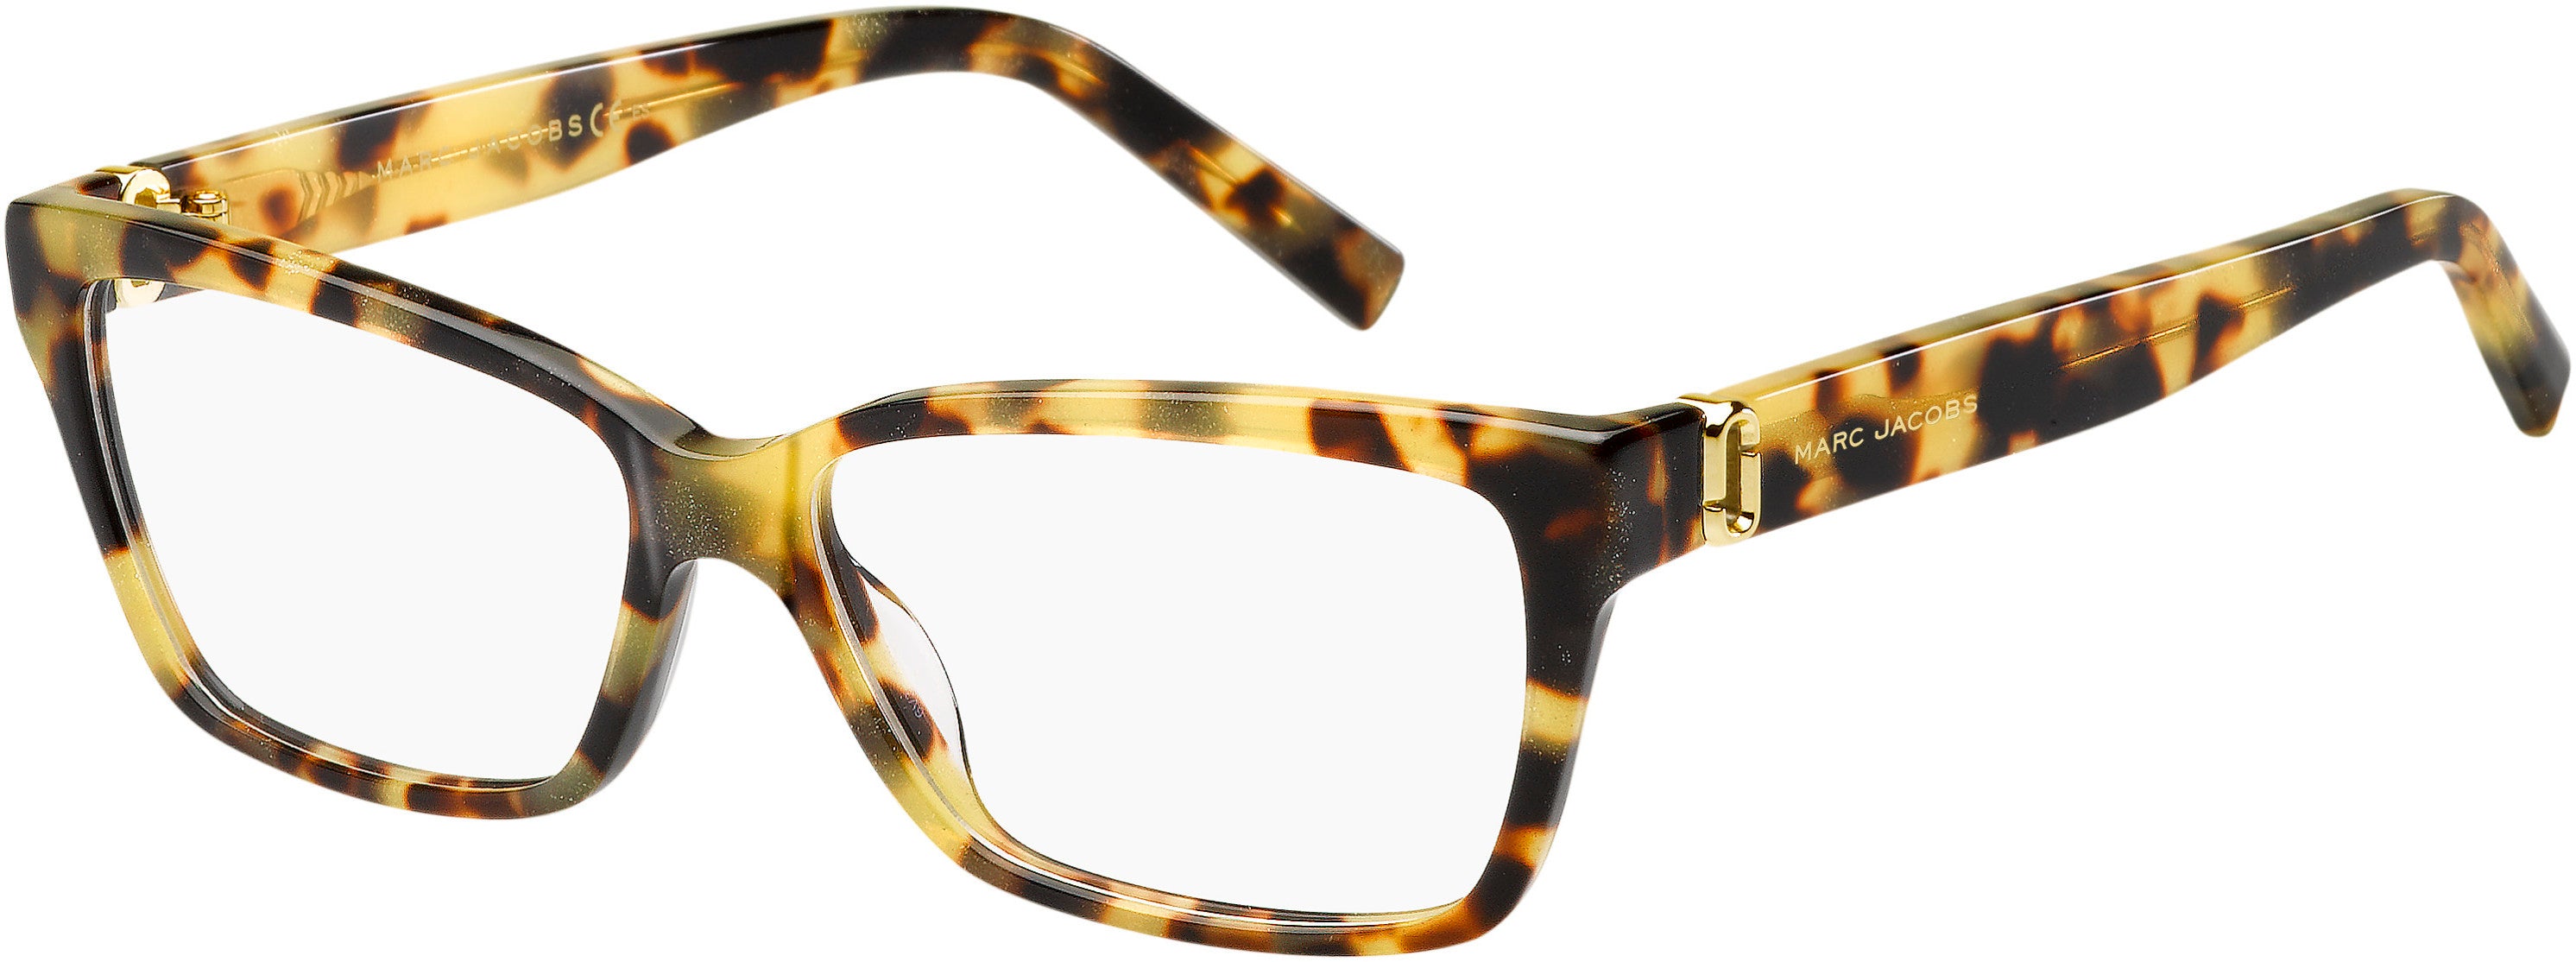 Marc Jacobs Marc 113 Rectangular Eyeglasses 0O2V-0O2V  Glitter Havana (00 Demo Lens)